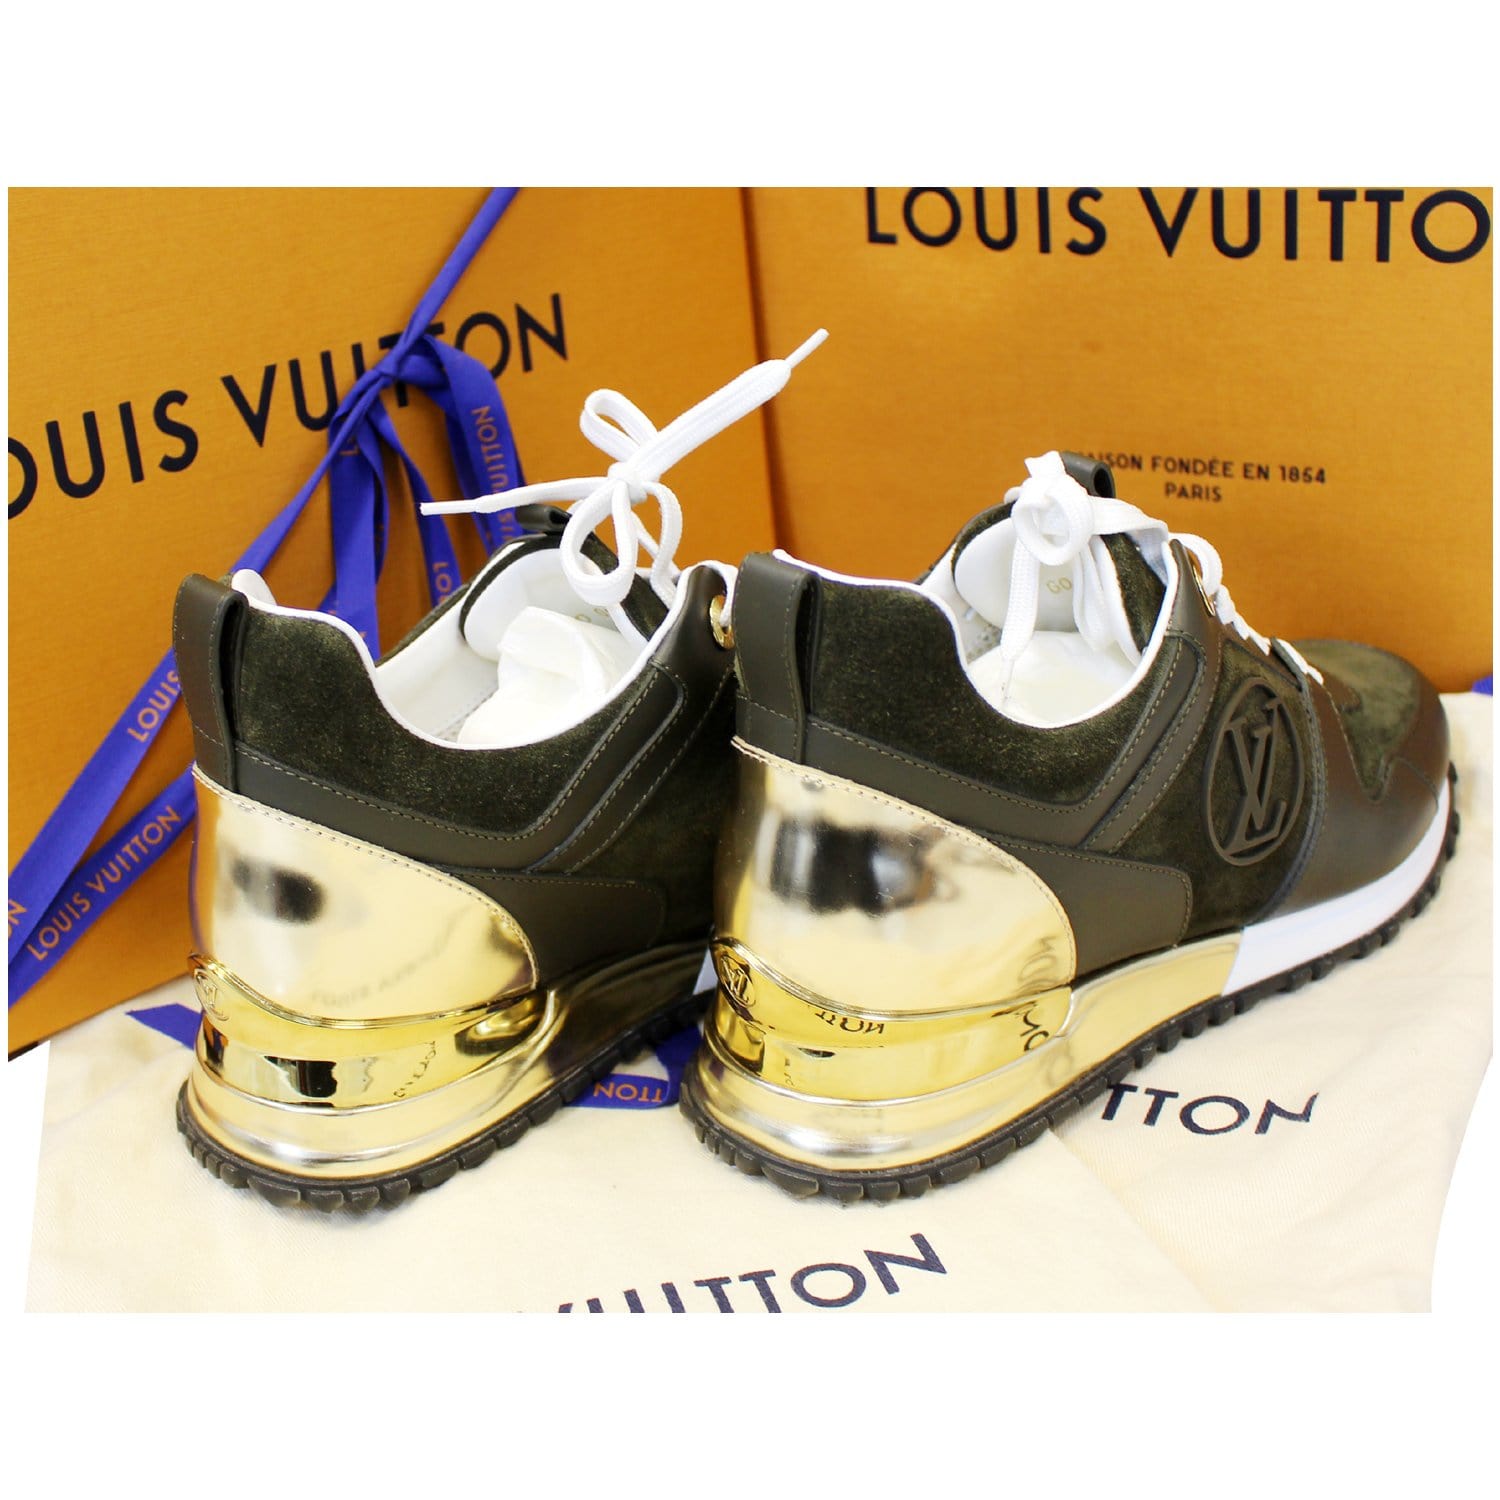 Louis Vuitton Shoes size 37  Louis vuitton shoes, Shoes, Louis vuitton